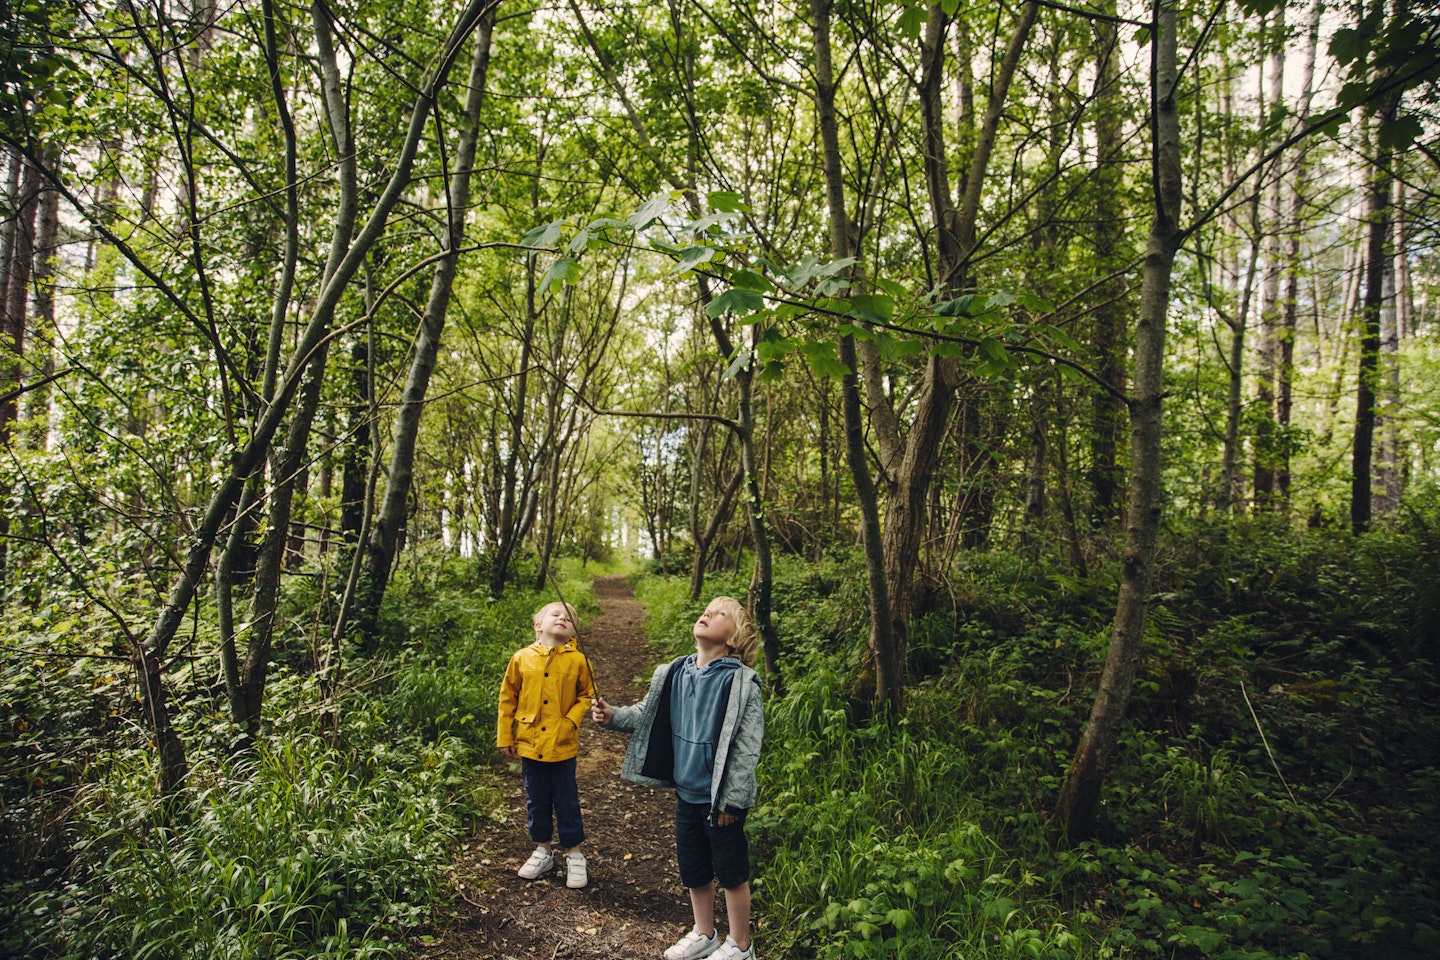 Two little boys walking in a Welsh forest